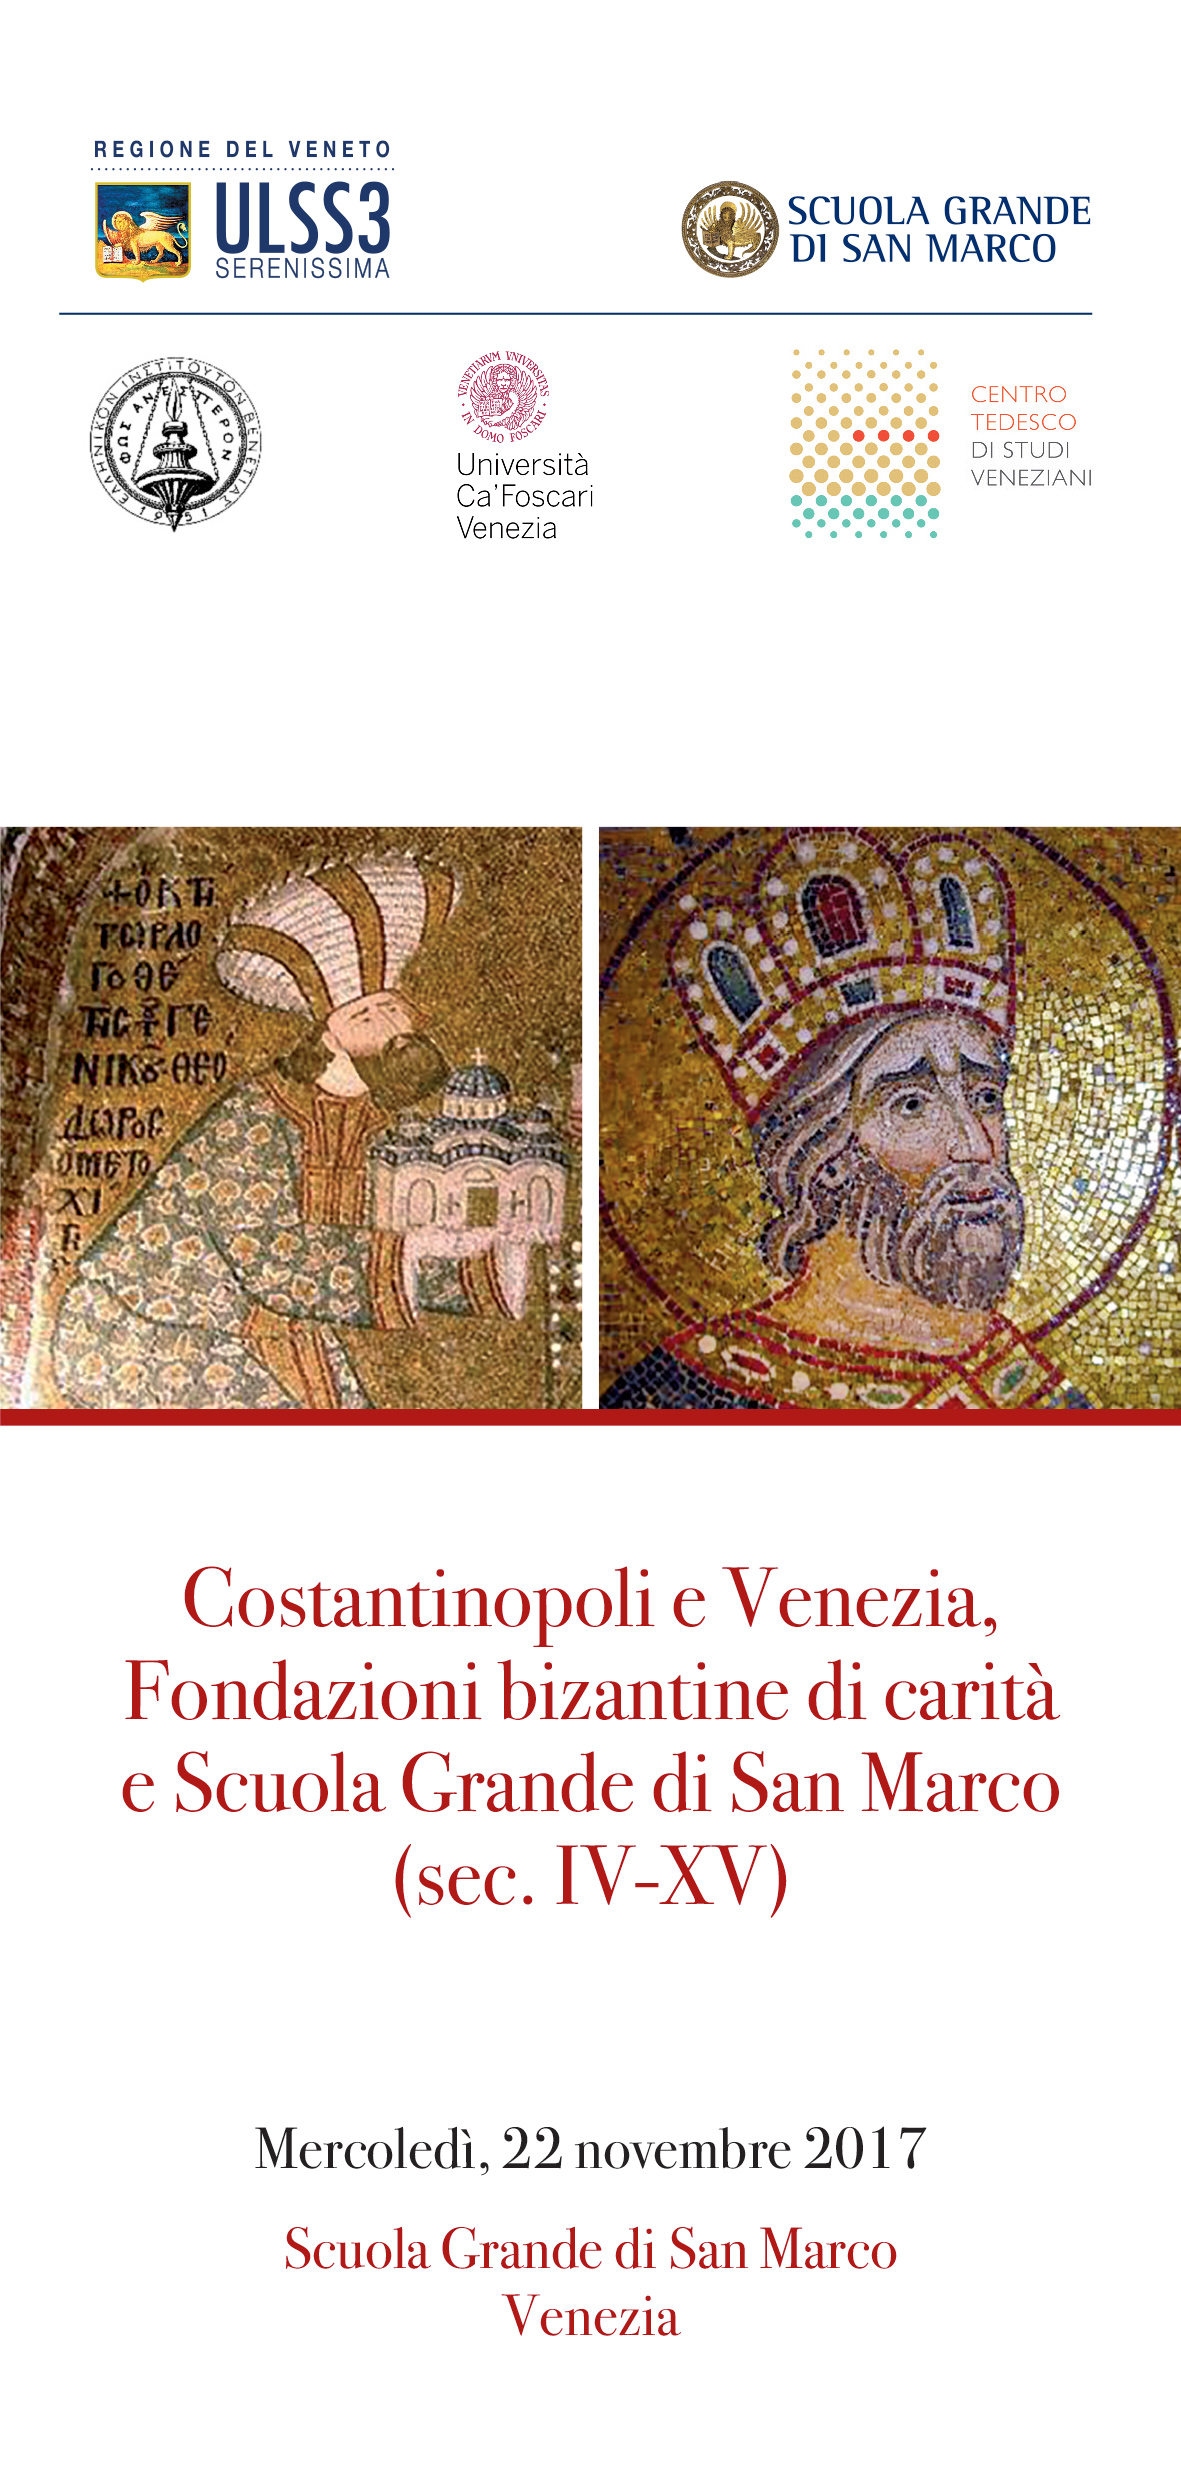 Costantinopoli e Venezia, Fondazioni bizantine di carità e Scuola Grande di San Marco (sec. IV-XV)